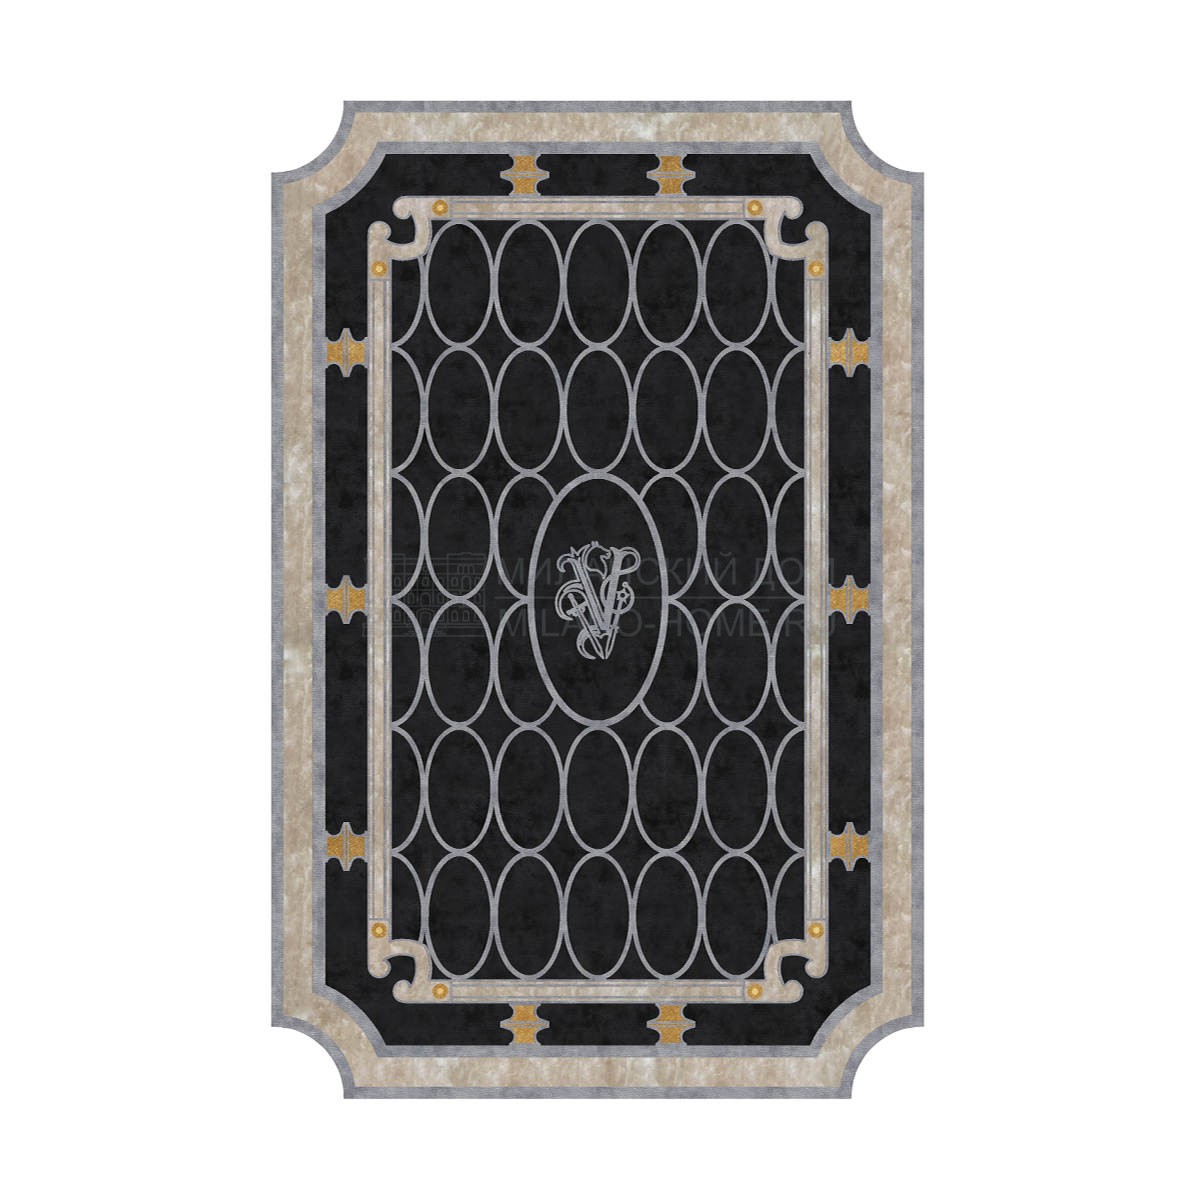 Ковер Mystery carpet из Италии фабрики IPE CAVALLI VISIONNAIRE